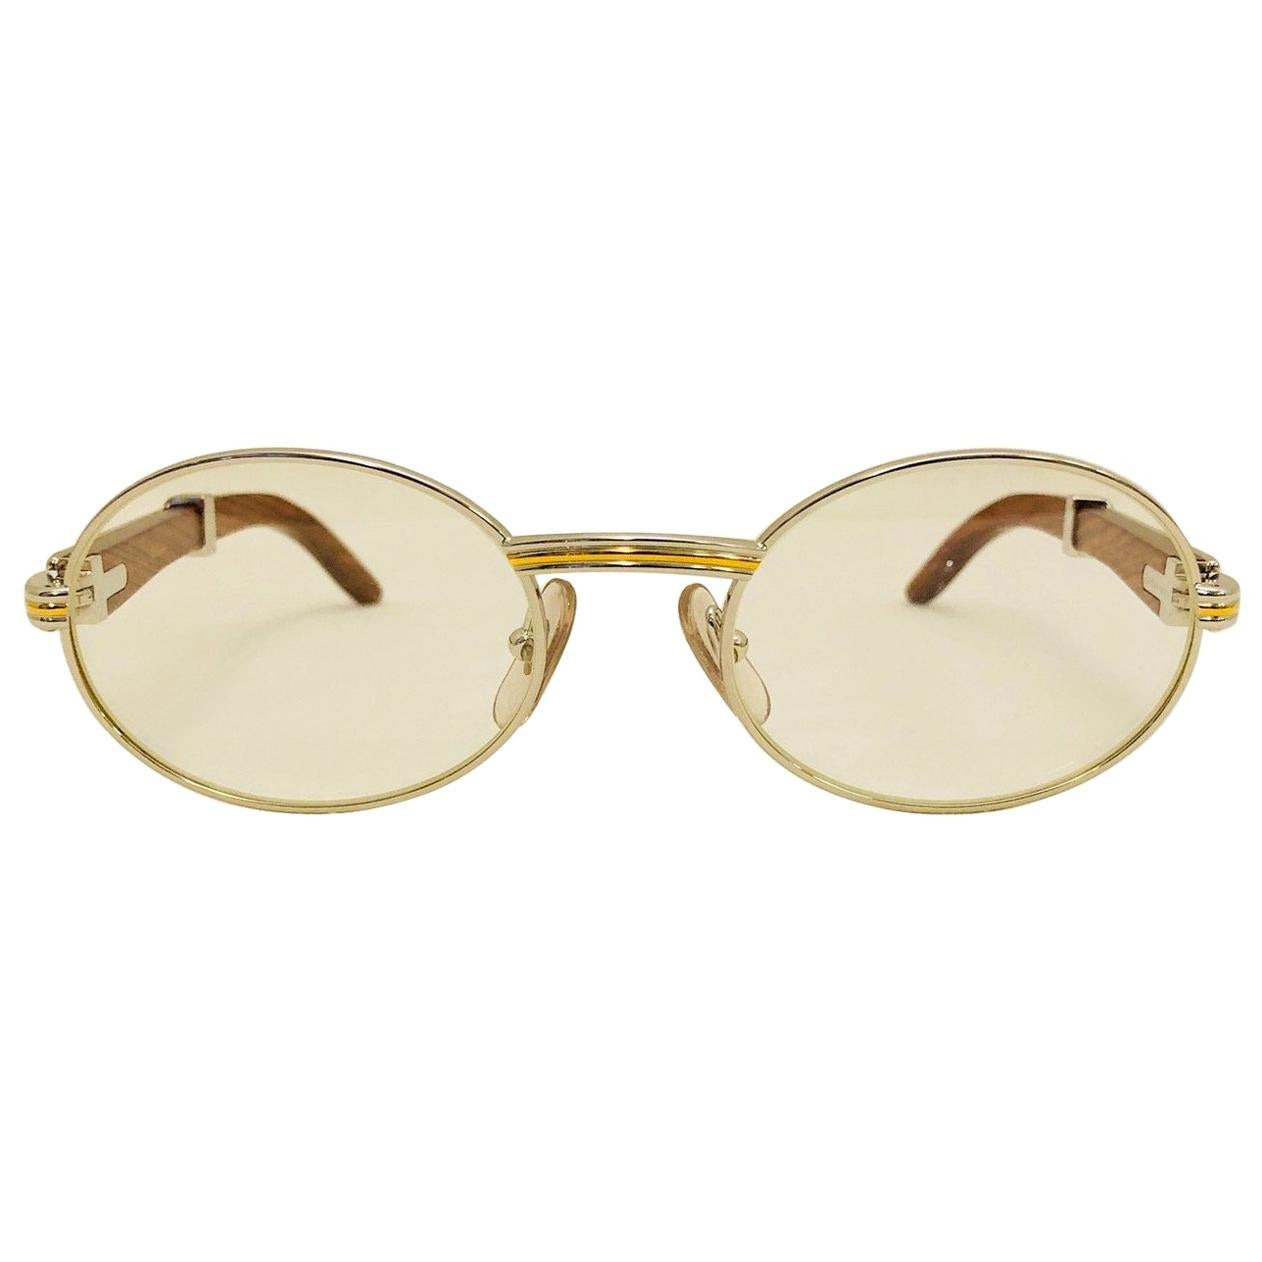 Vintage Cartier Giverny Palisander 18K Gold & Rosewood Glasses 51 20